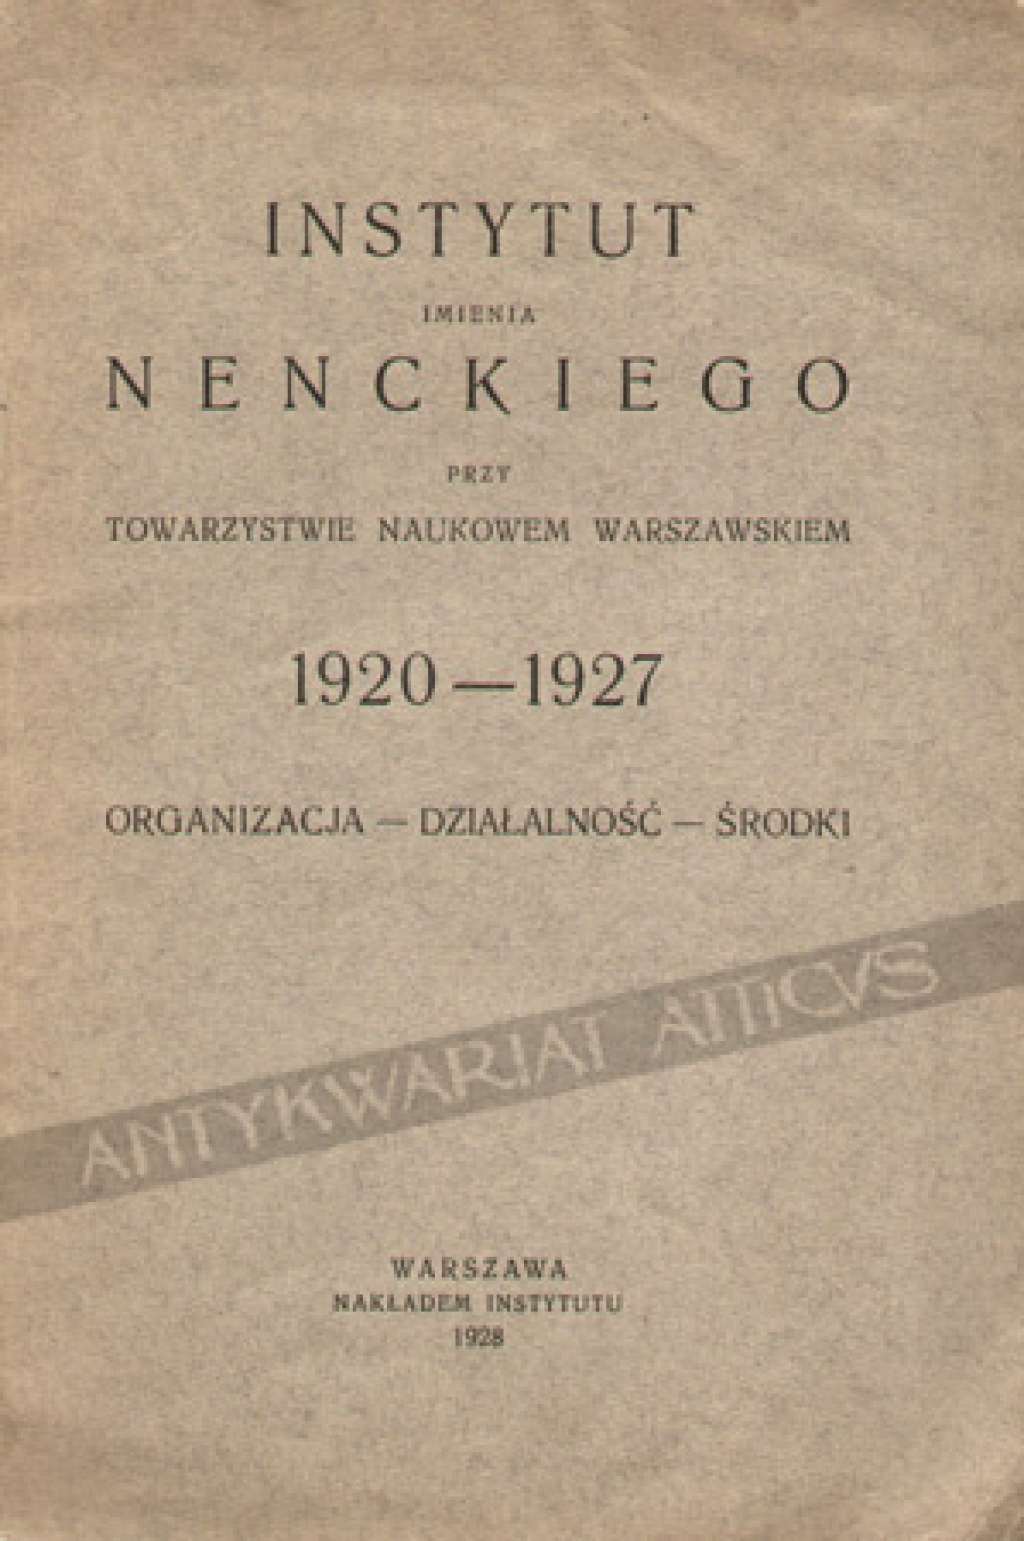 Instytut imienia Nenckiego przy Towarzystwie Naukowem Warszawskiem 1920-1927. Organizacja - działalność - środki